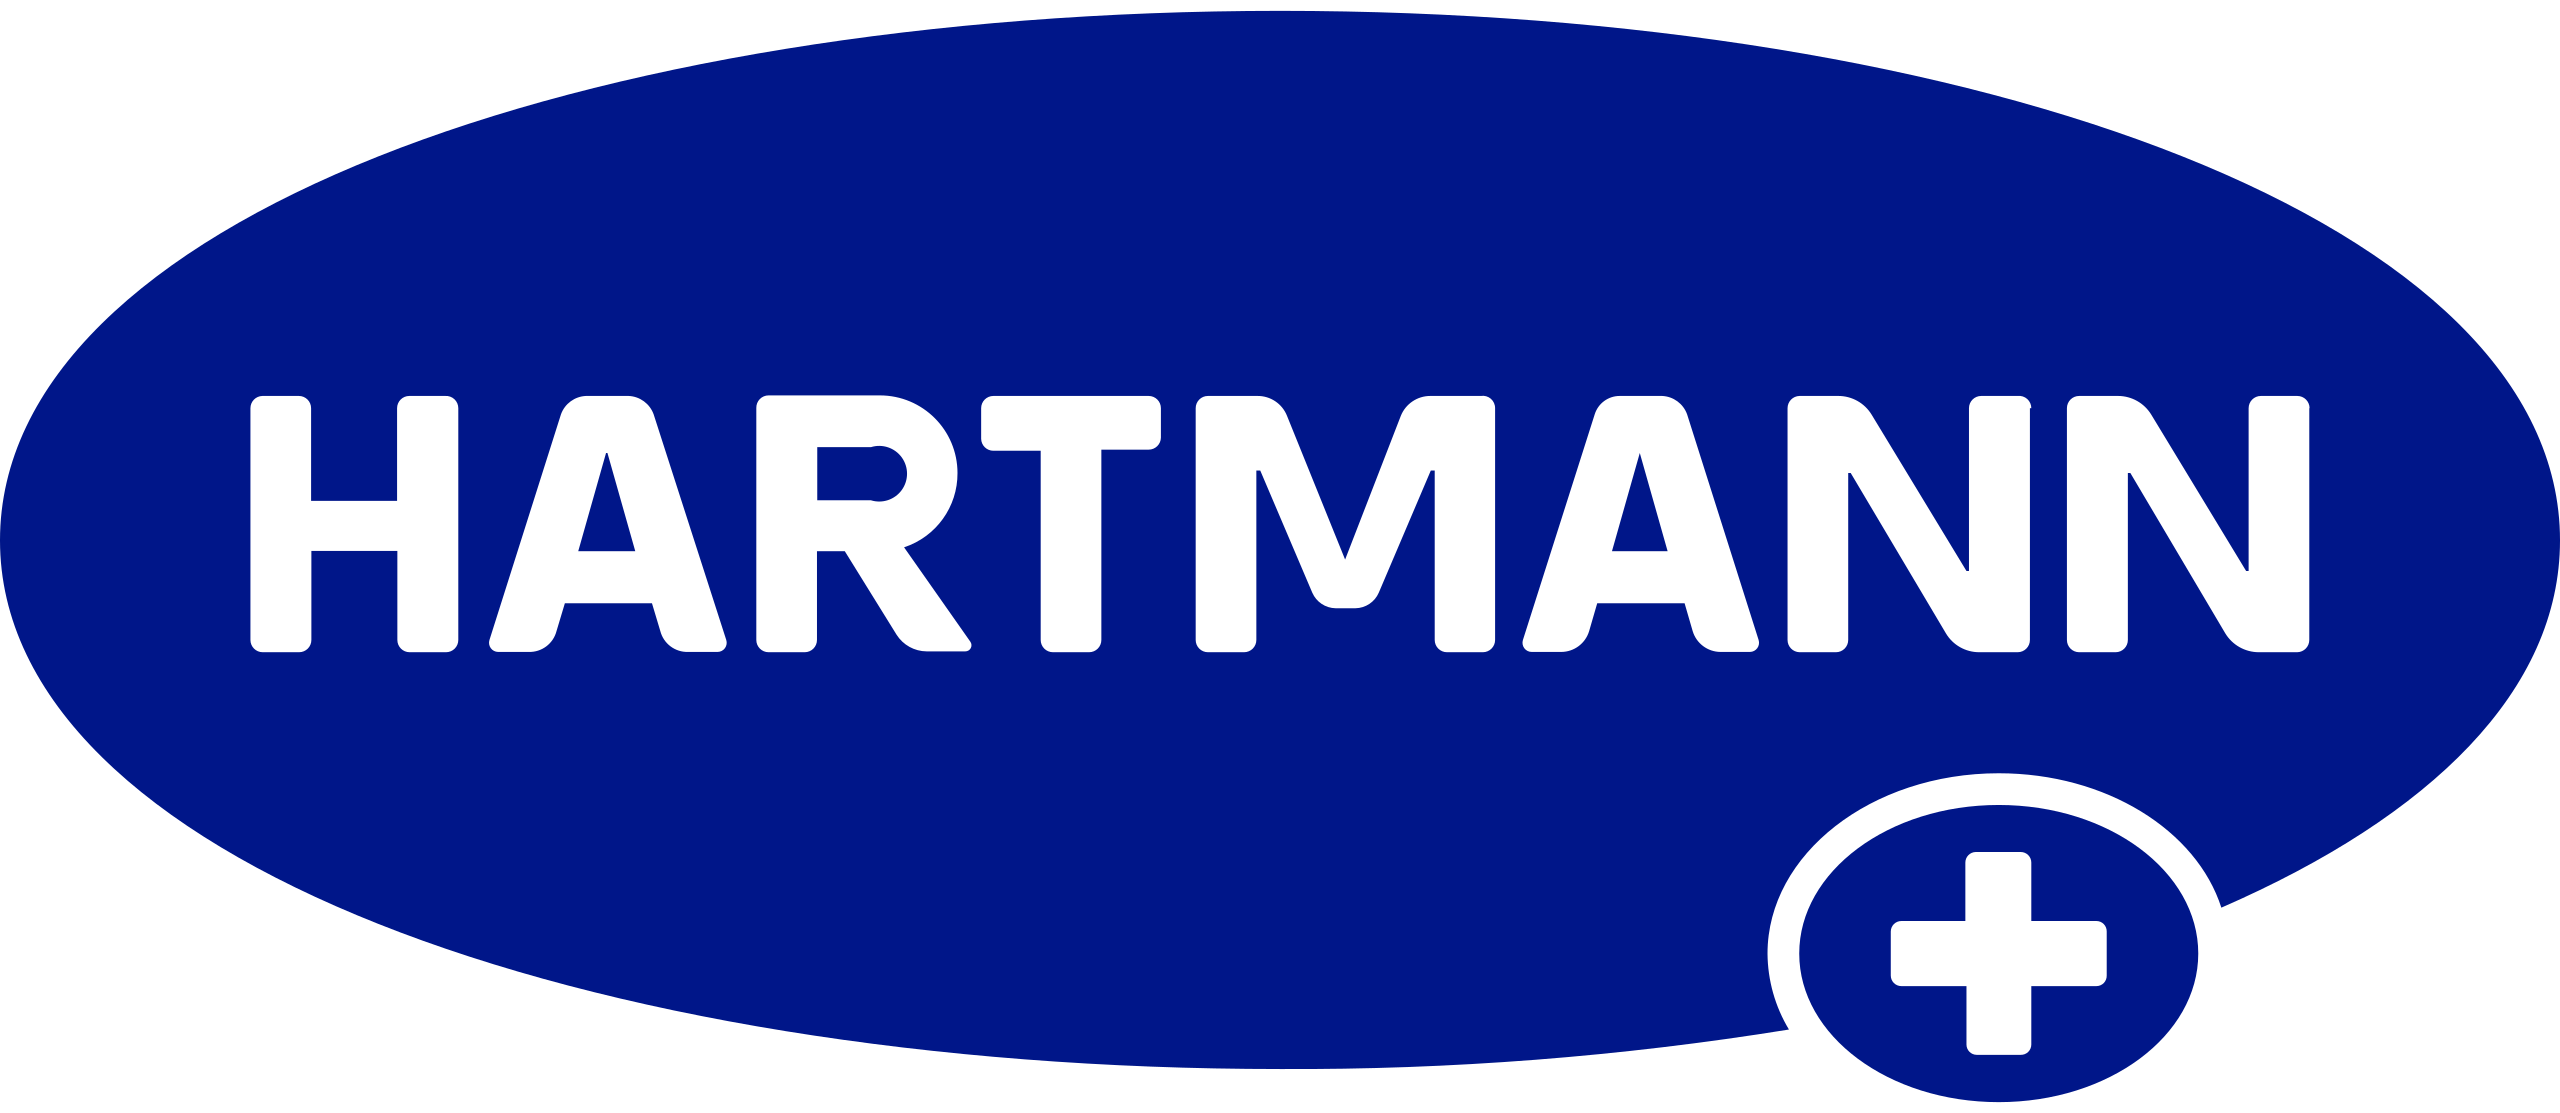 , Hartmann USA Wound Management Manufacturer